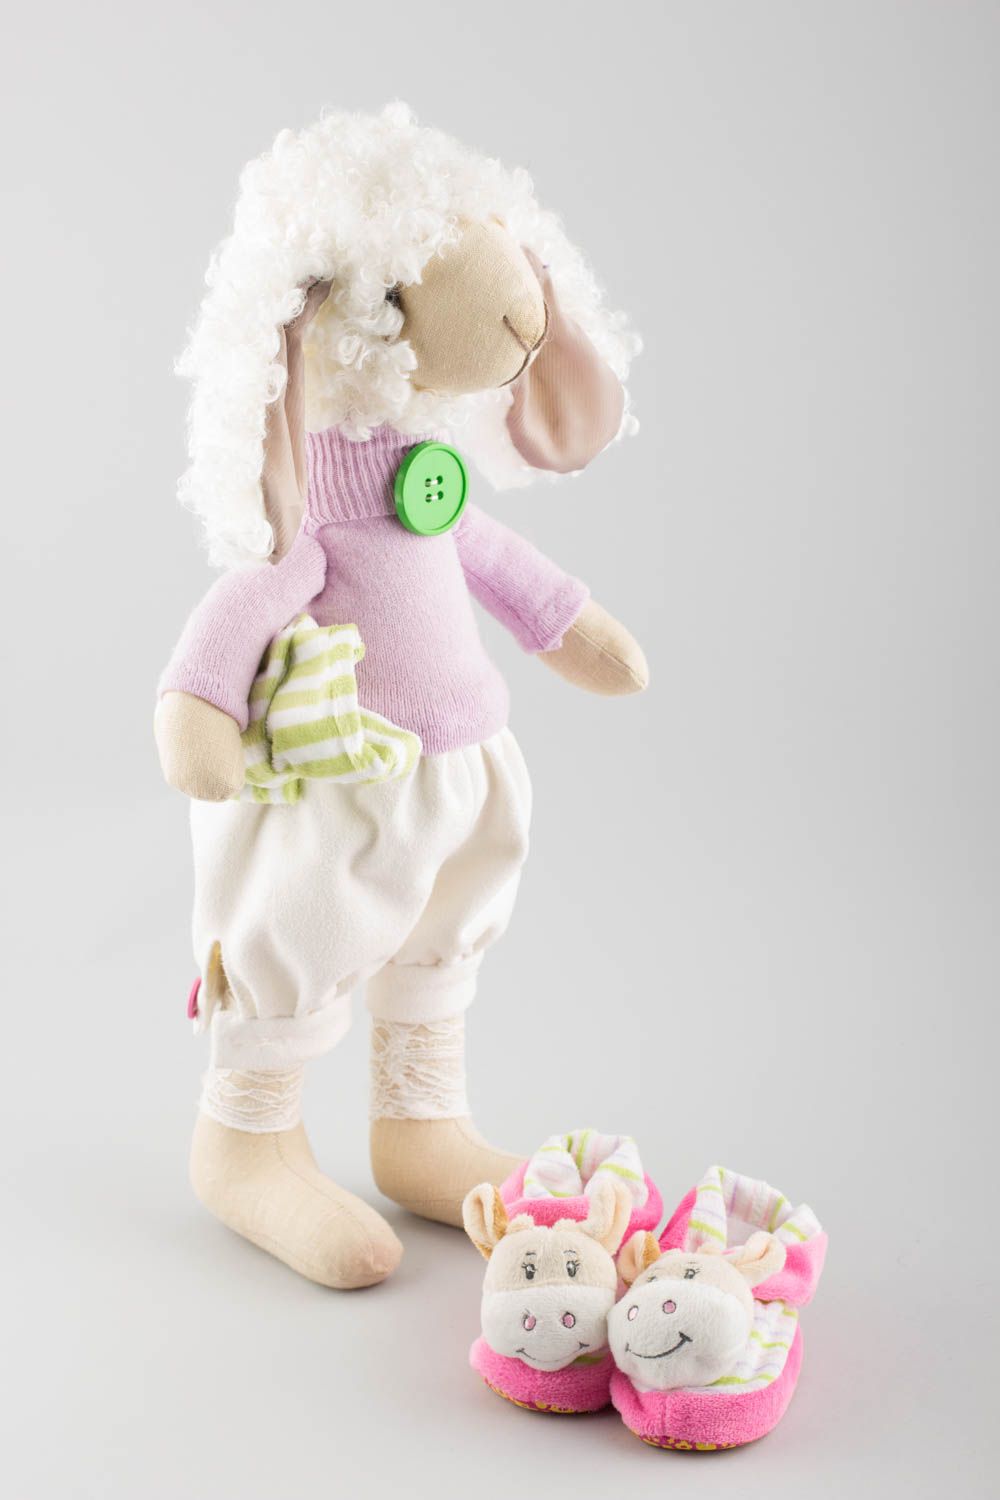 Textil Kuscheltier Schaf künstlerisch niedlich Spielzeug für Kinder und Deko foto 3